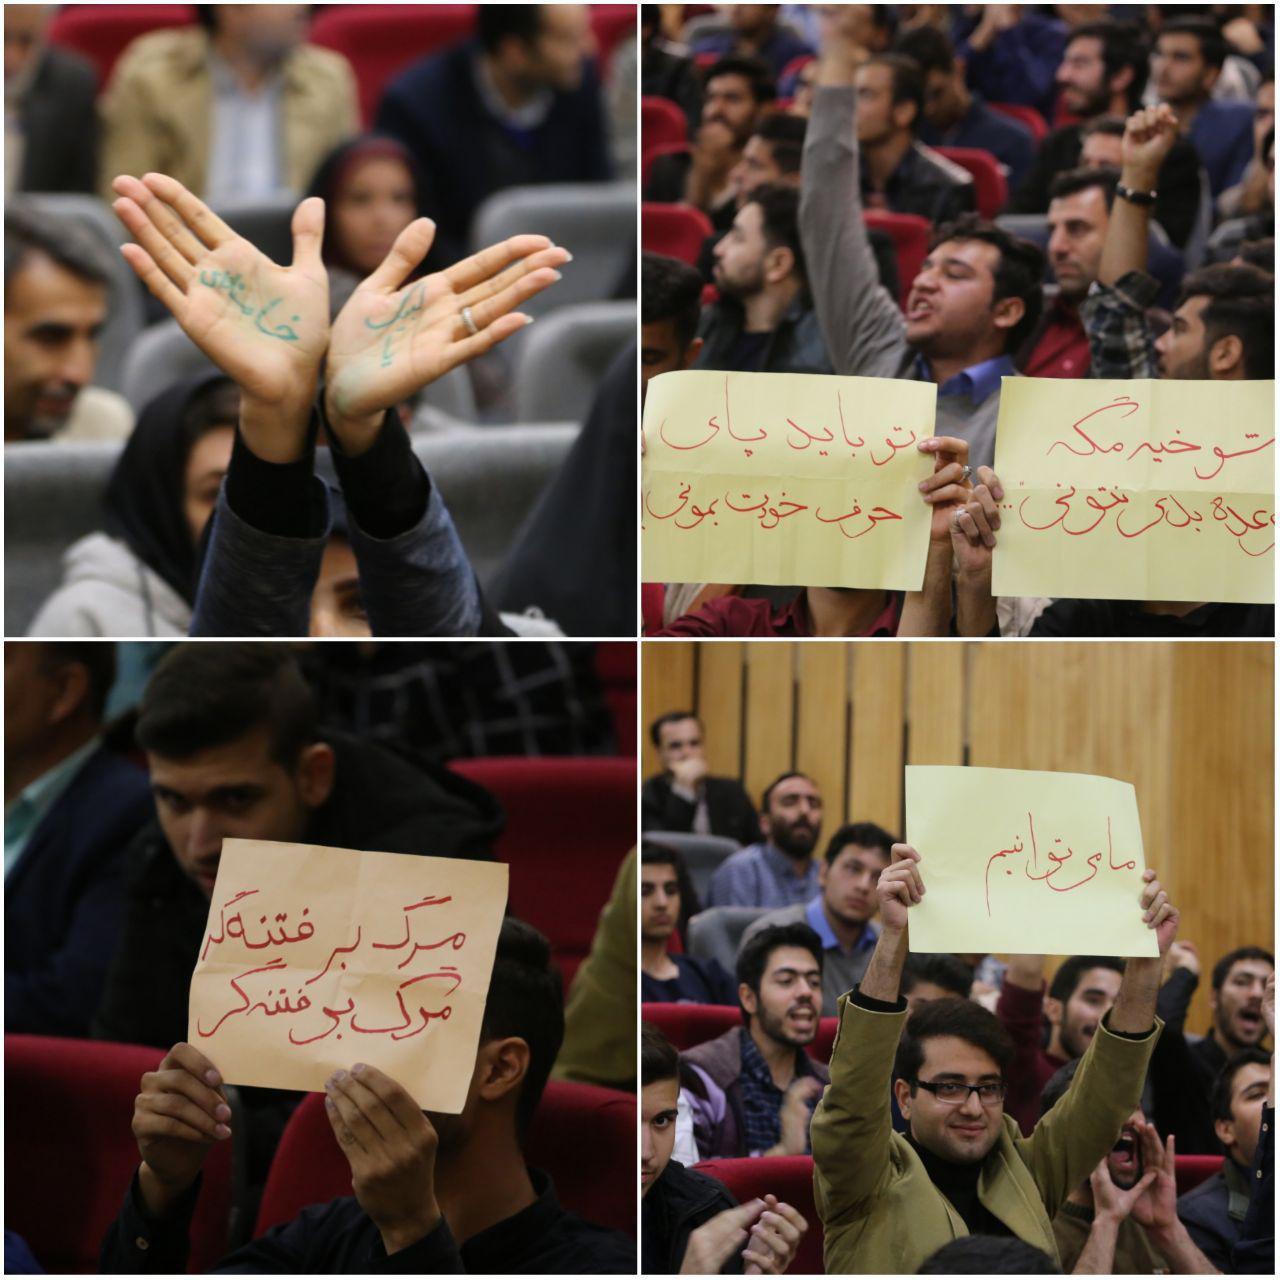 حاشیه‌های از مراسم روز دانشجو که از دید بسیاری پنهان ماند/ از تبعیض تا سانسور دانشجویان انقلابی تا خواب عمیق یک دانشجو!